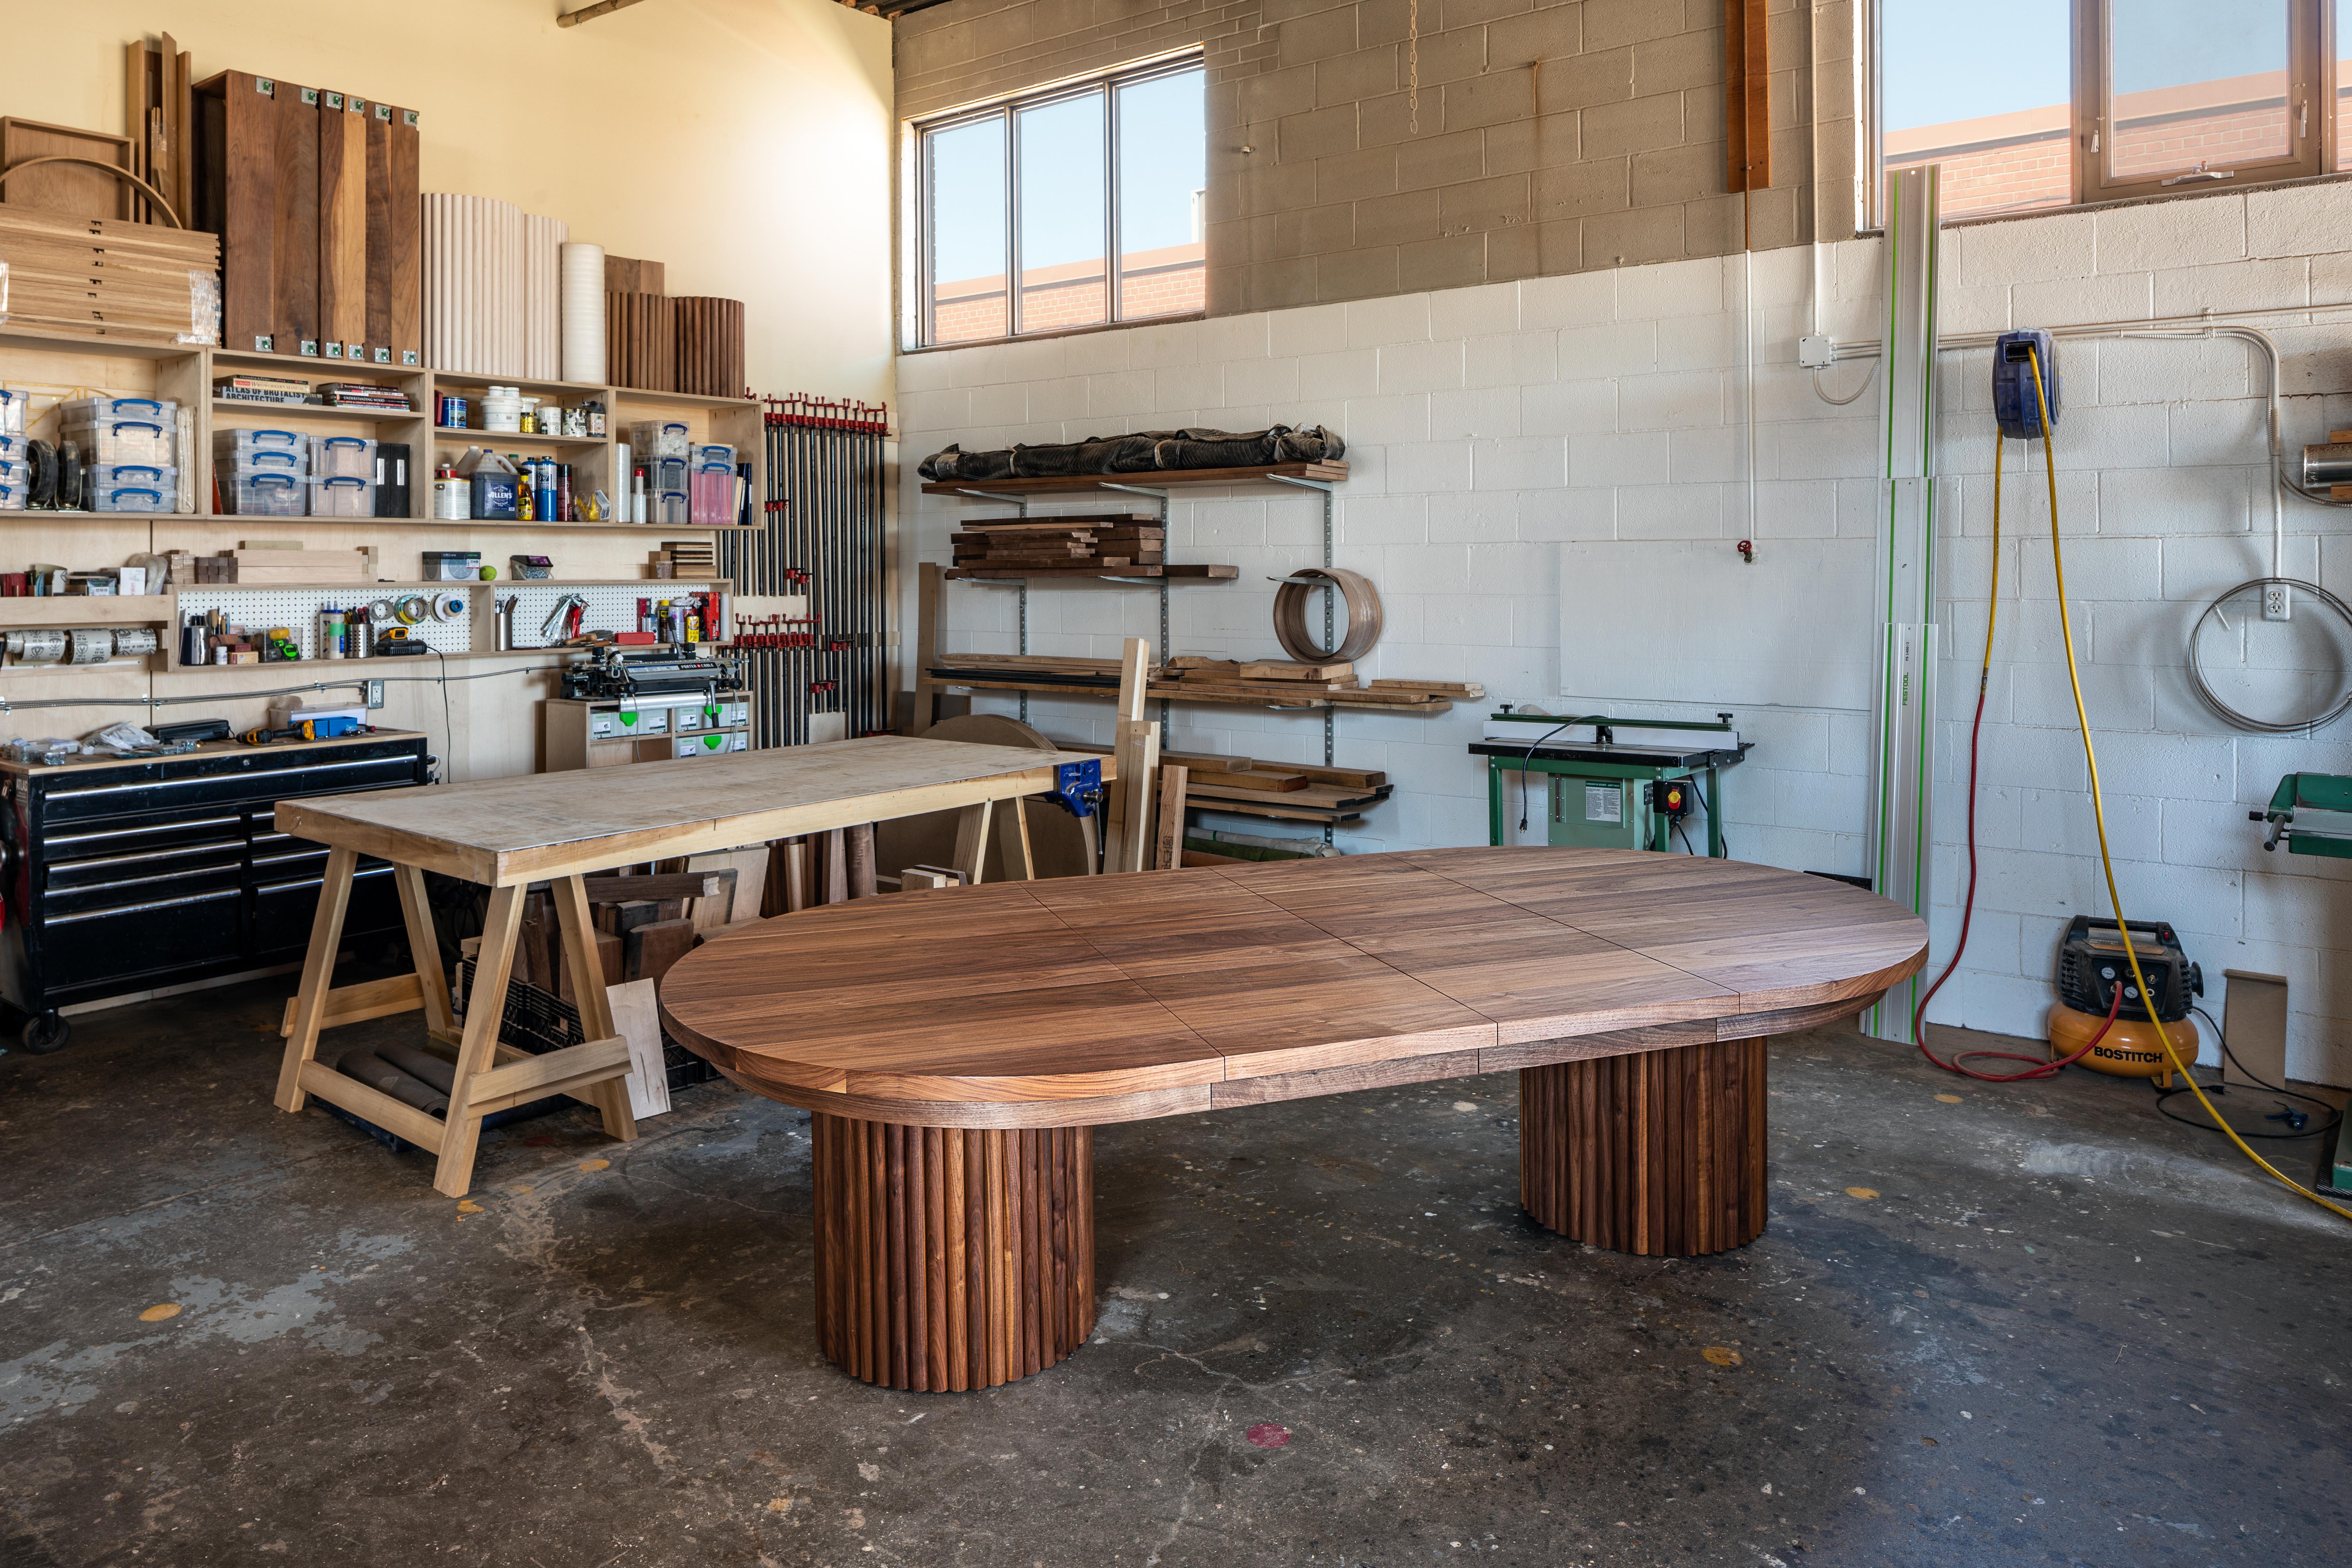 D'une audace inouïe, la table à manger de Kate Duncan est une pièce qui rend hommage à la fois à l'esthétique contemporaine et à l'architecture brutaliste. Des colonnes de cannelures taillées et un solide plateau en bois massif créent une table que